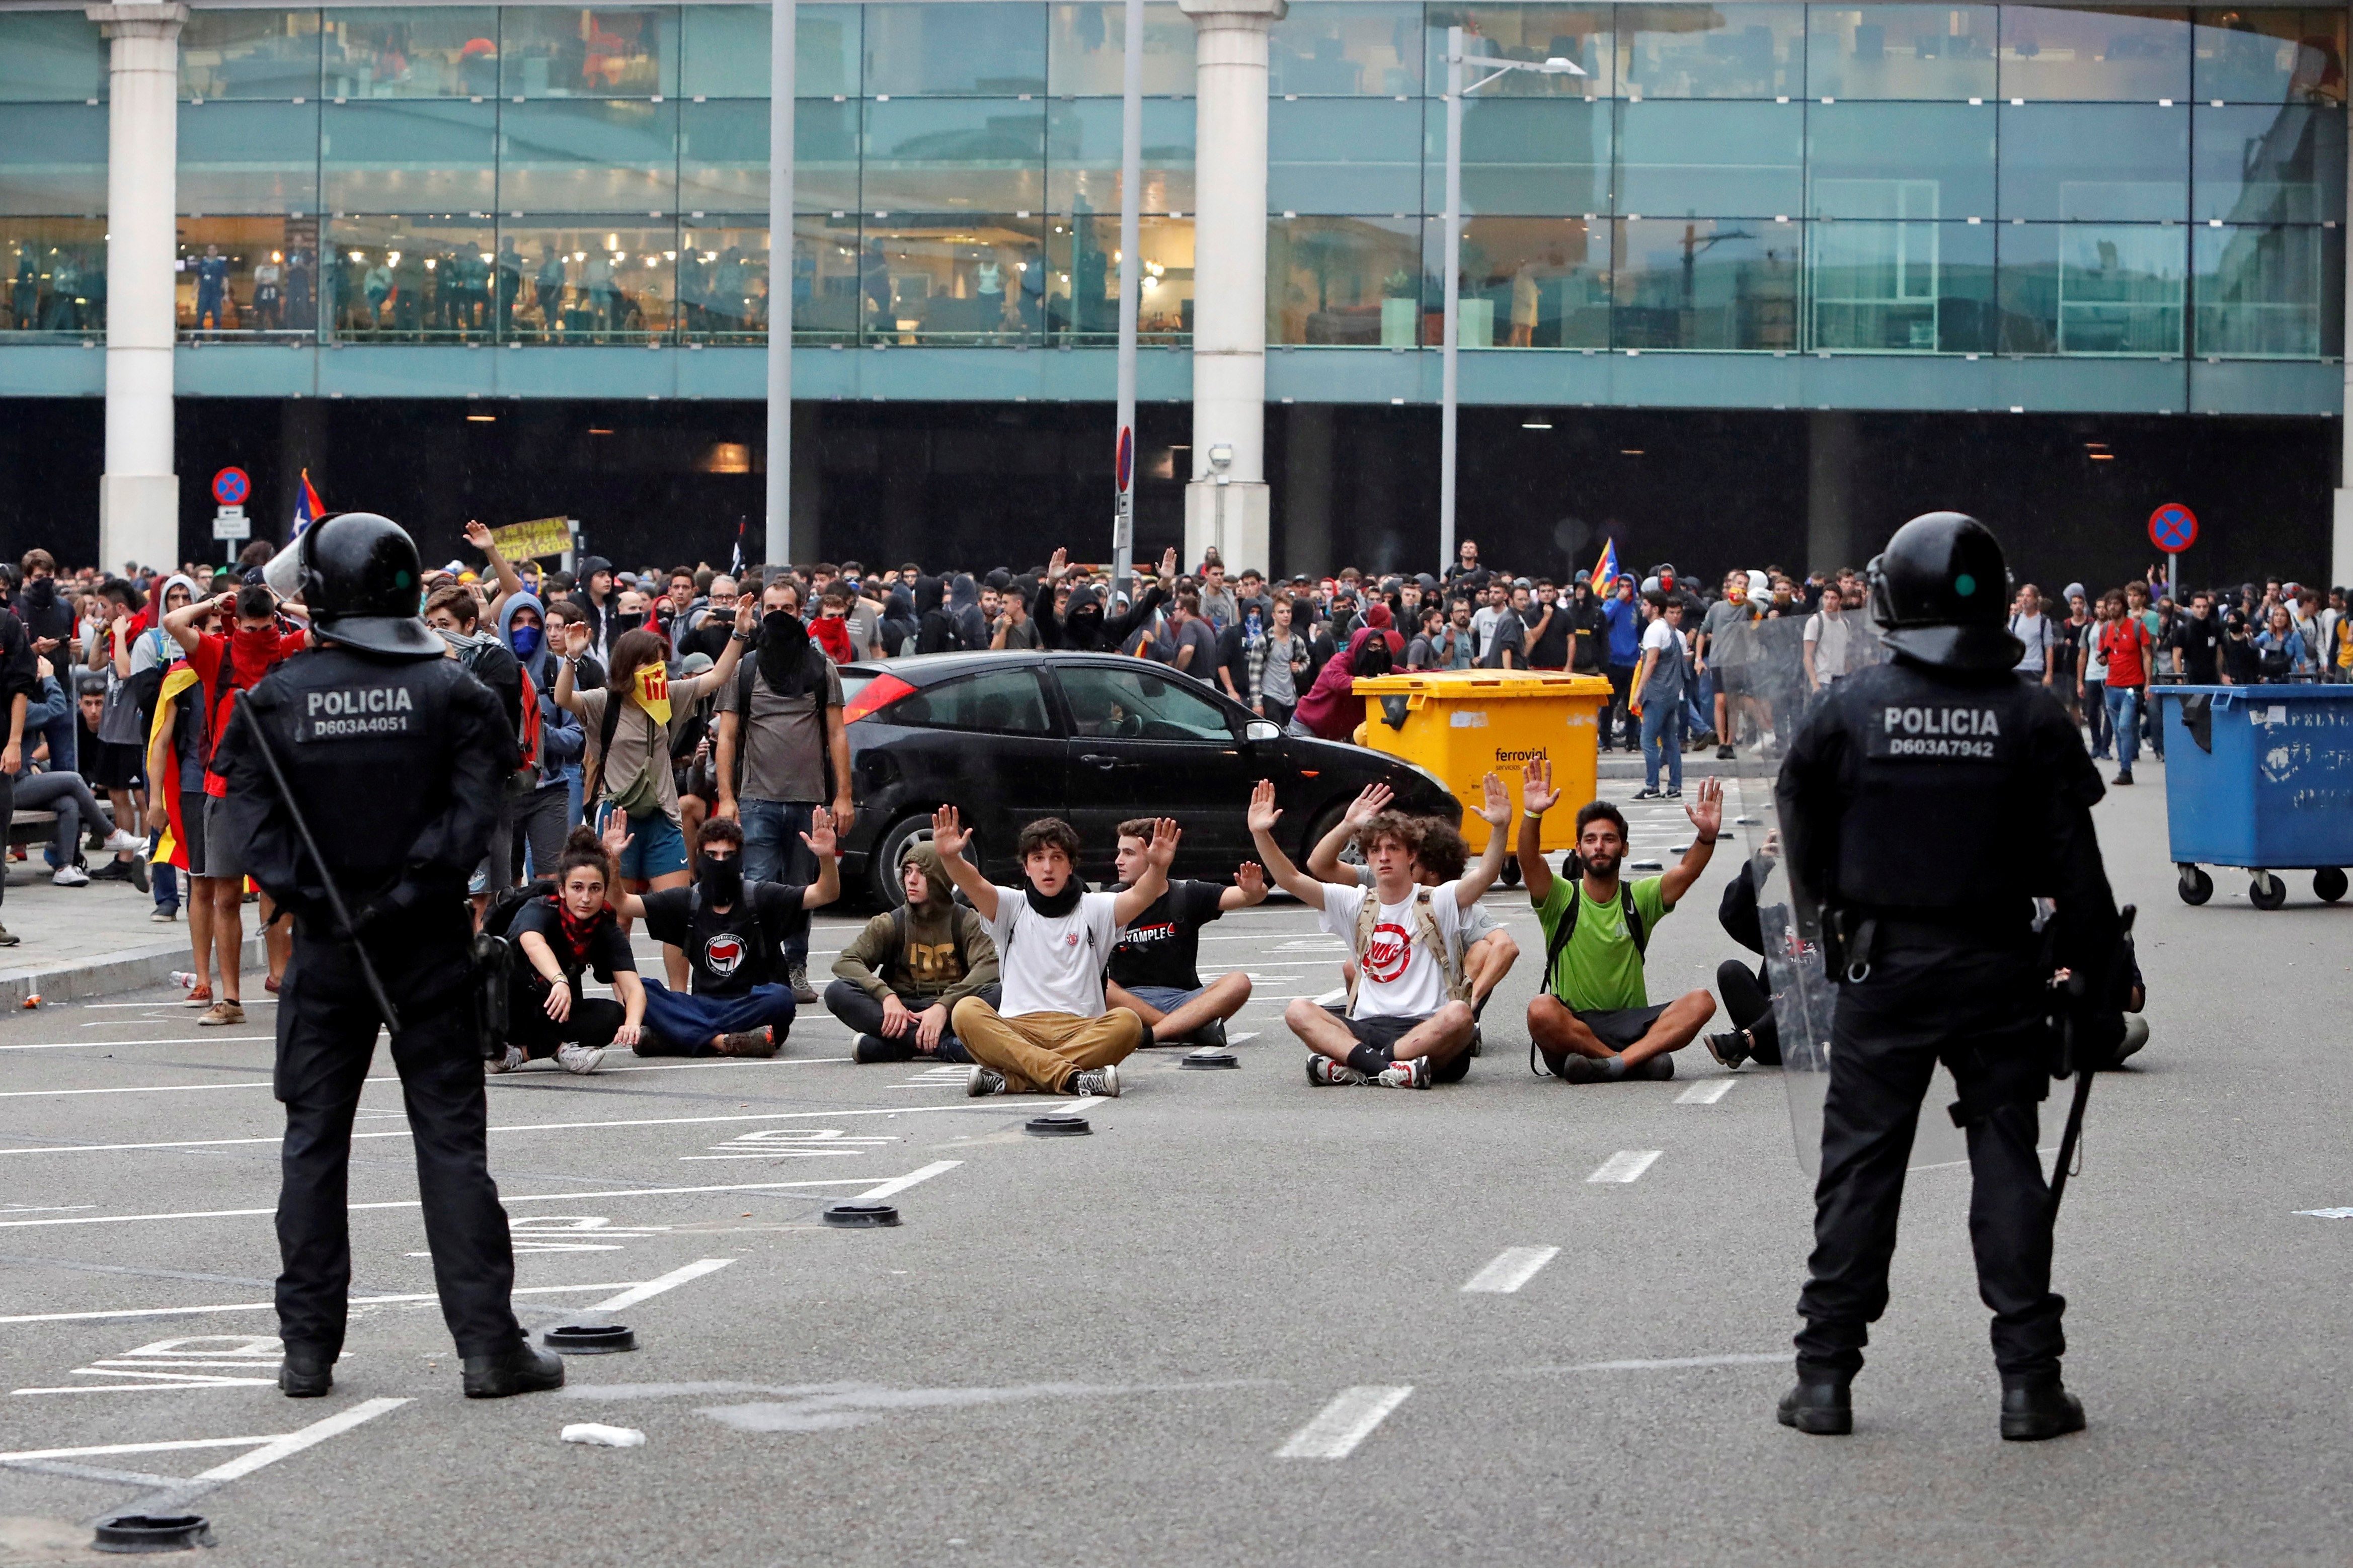 Autoridades controlan a las personas que se concentraron en el Aeropuerto del Prat, Barcelona. (Foto Prensa Libre: EFE)